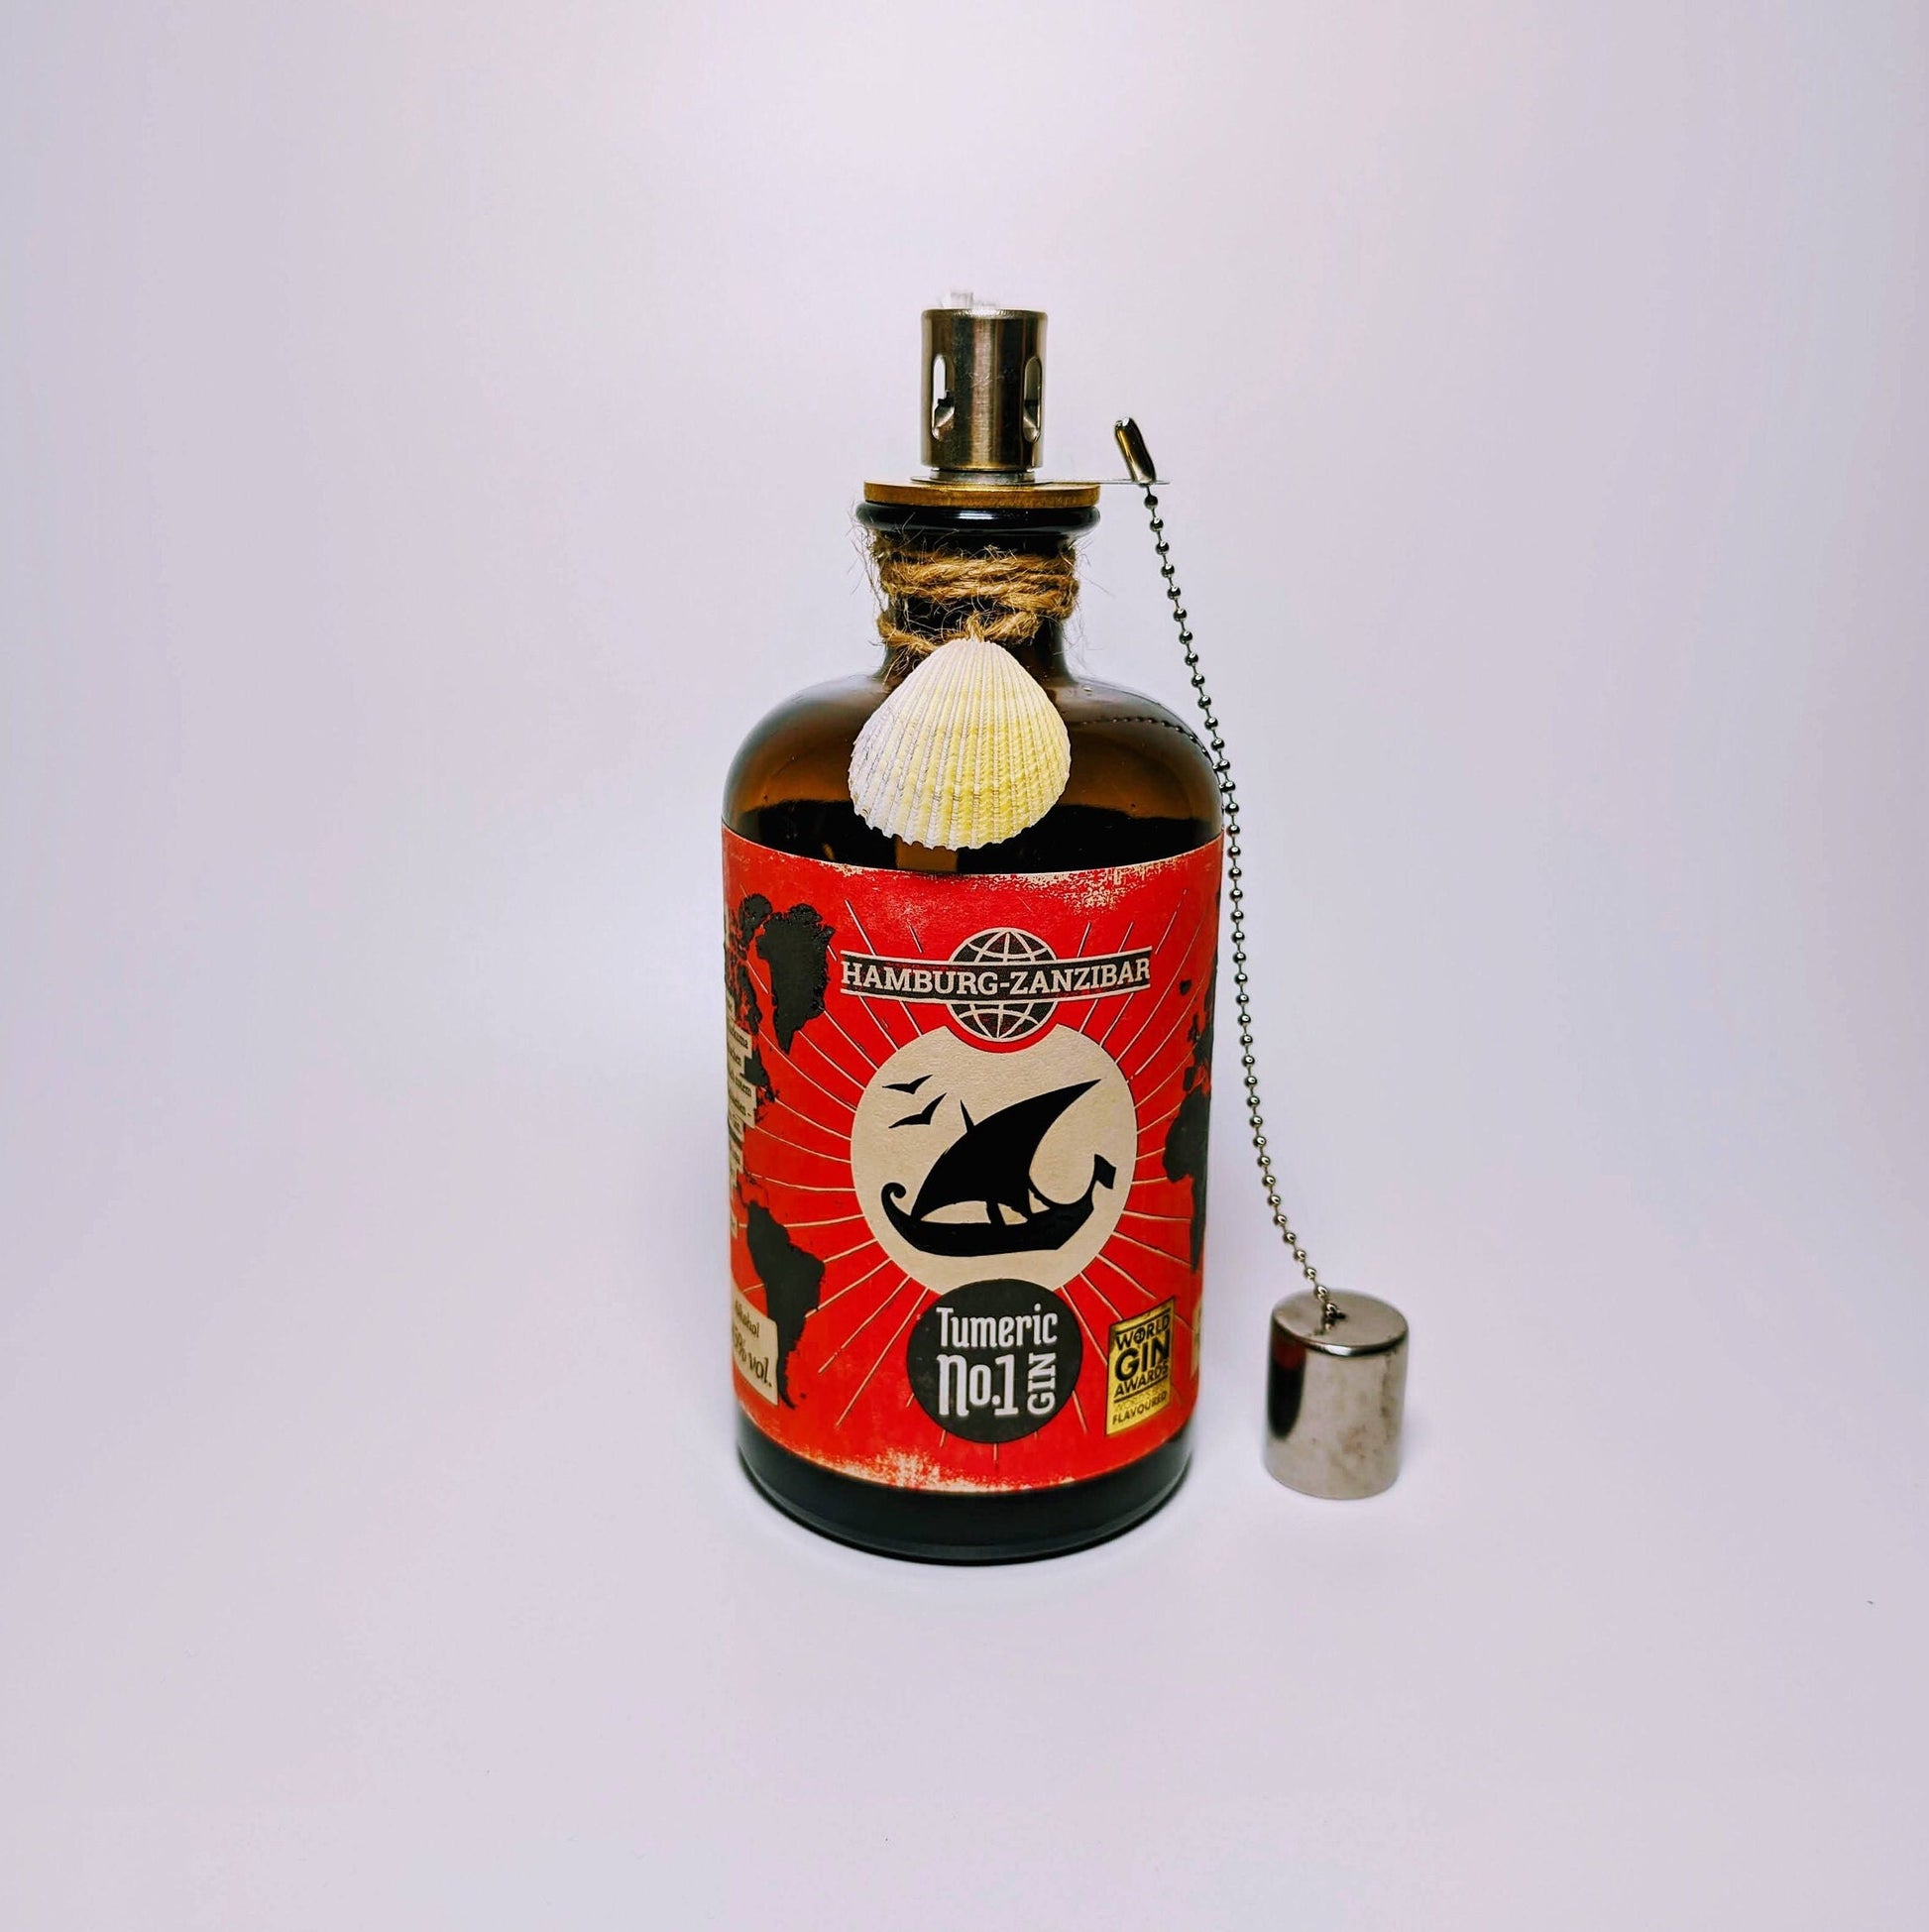 Gin Öllampe "Hamburg-Zanzibar" | Handgemachte Öllampe aus Hamburg-Zanzibar Gin Flaschen | Upcycling | Handgefertigt | Individuell | Geschenk